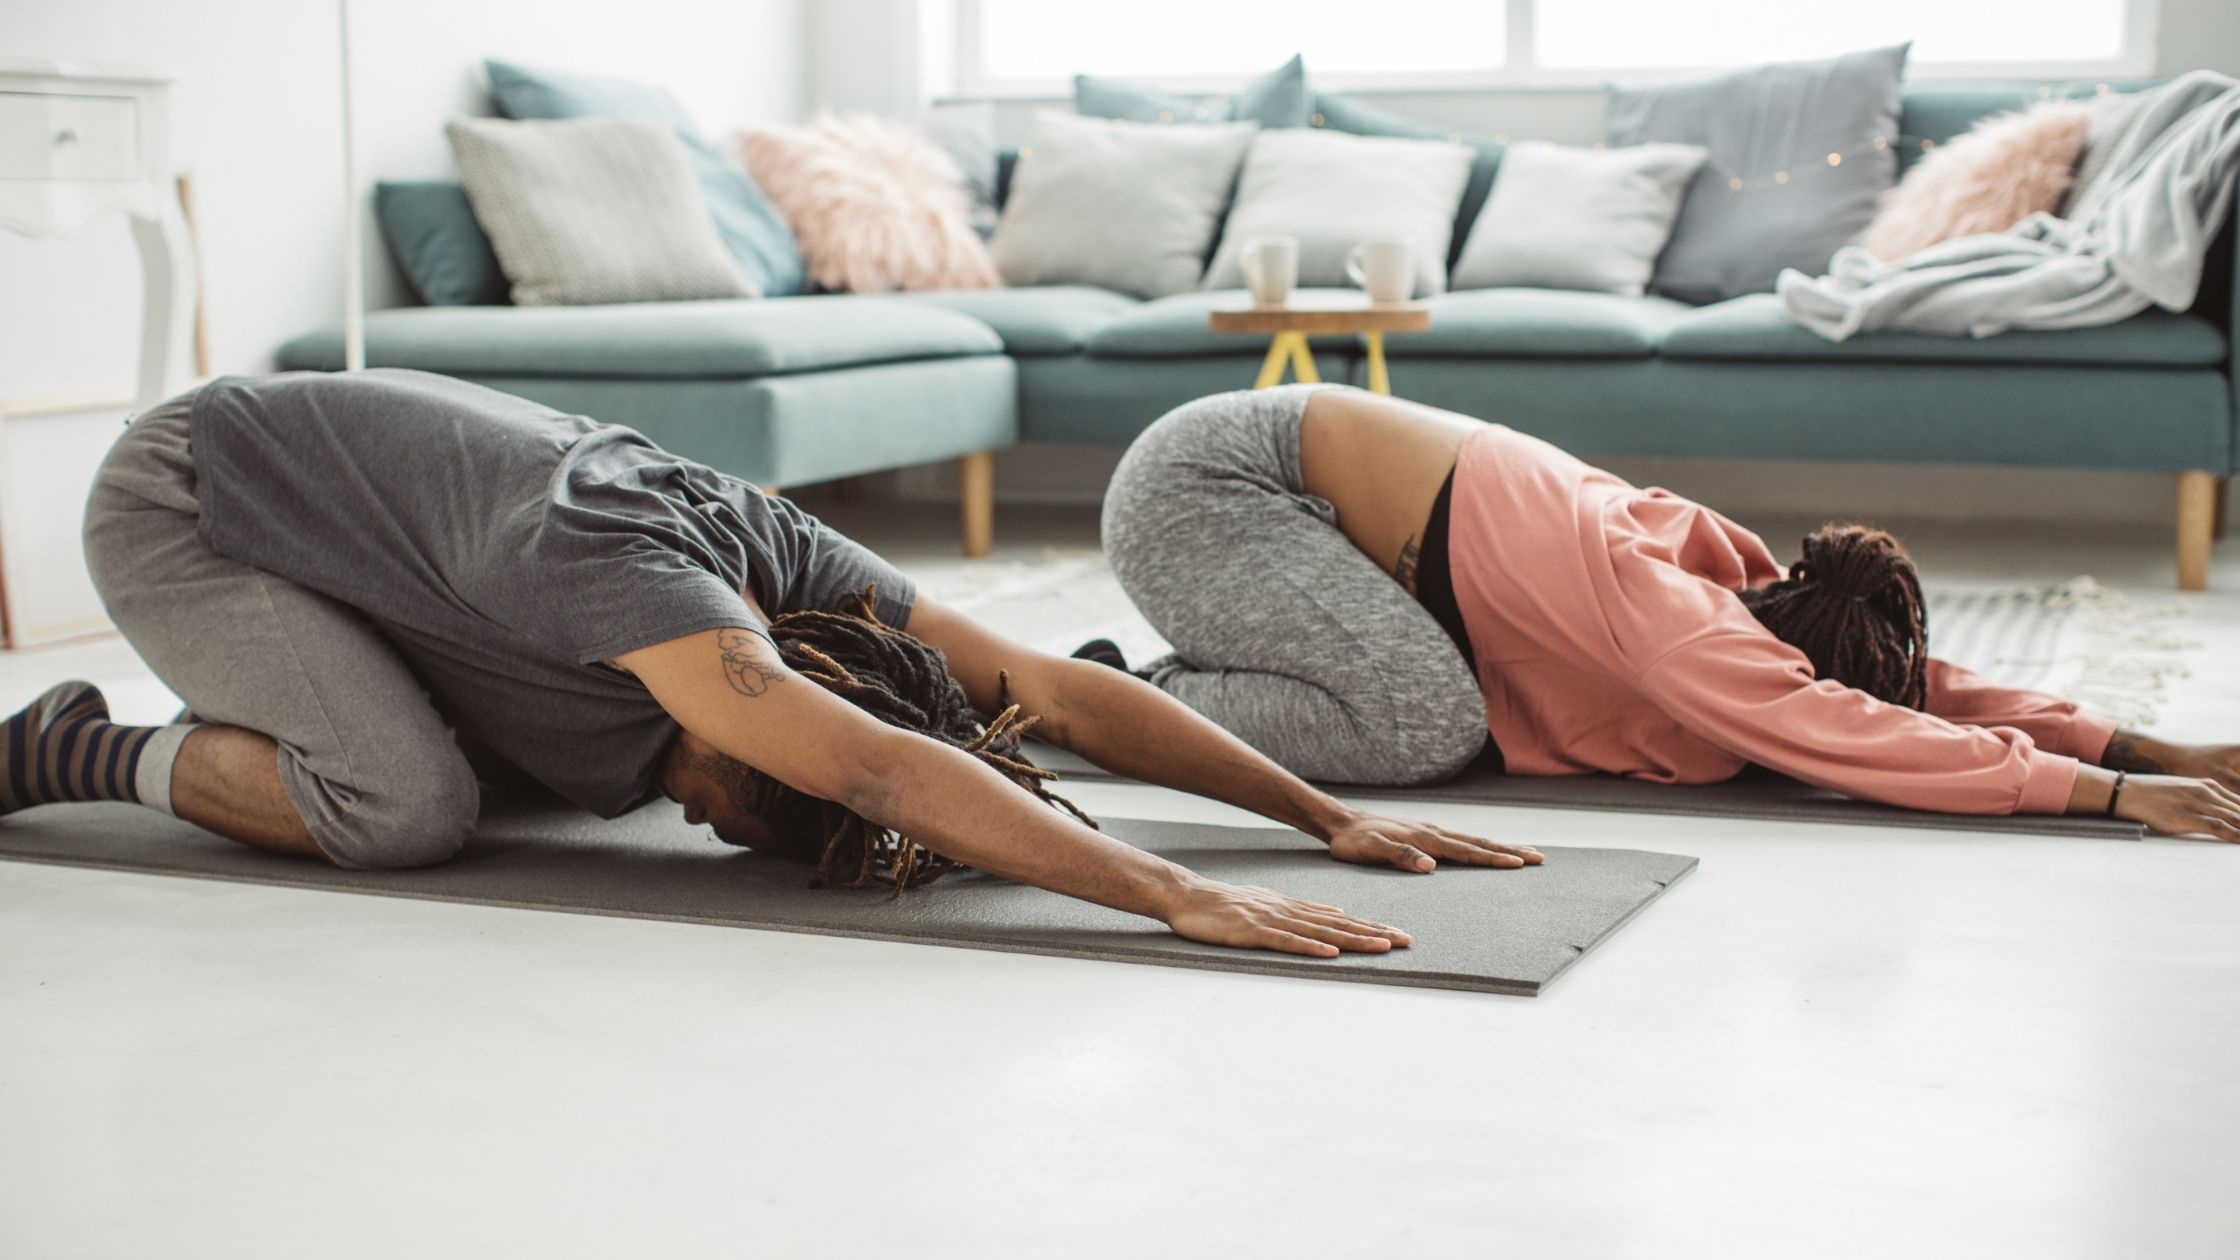 Rock Your Yoga - rockyouryoga.de - die 4 besten Yoga Übungen für den Rücken - Yoga Blog